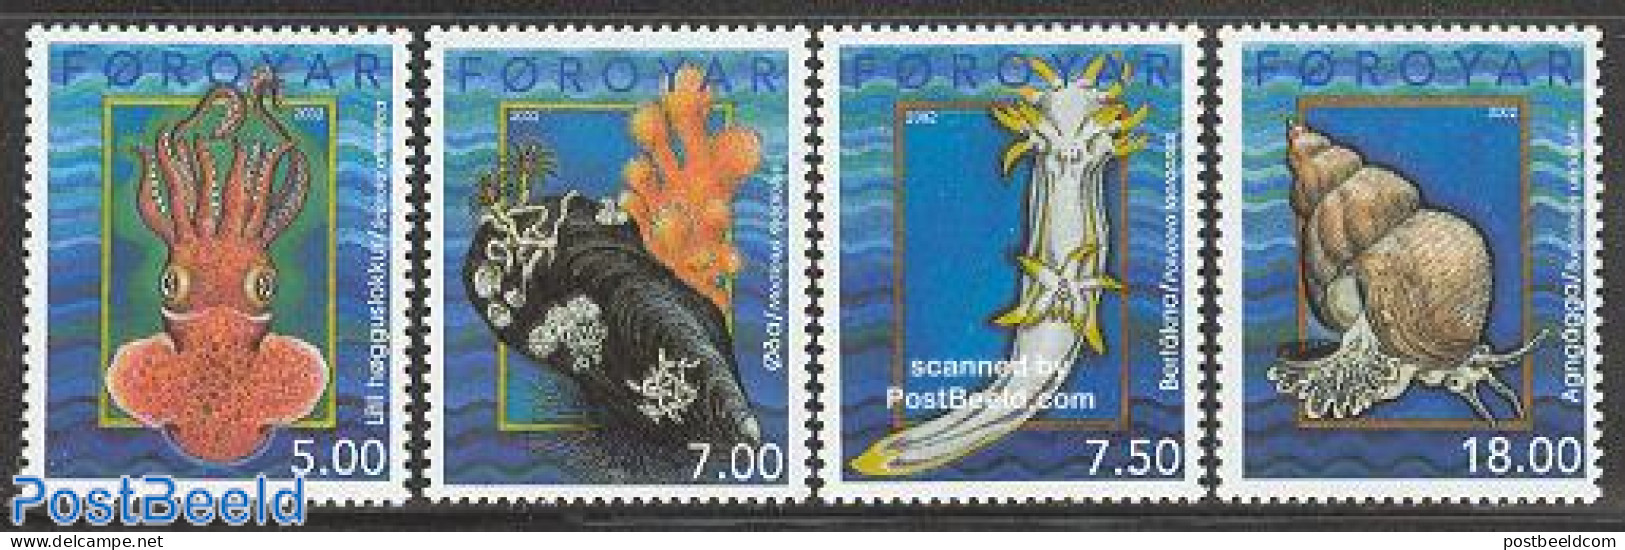 Faroe Islands 2002 Moluscs 4v, Mint NH, Nature - Shells & Crustaceans - Maritiem Leven